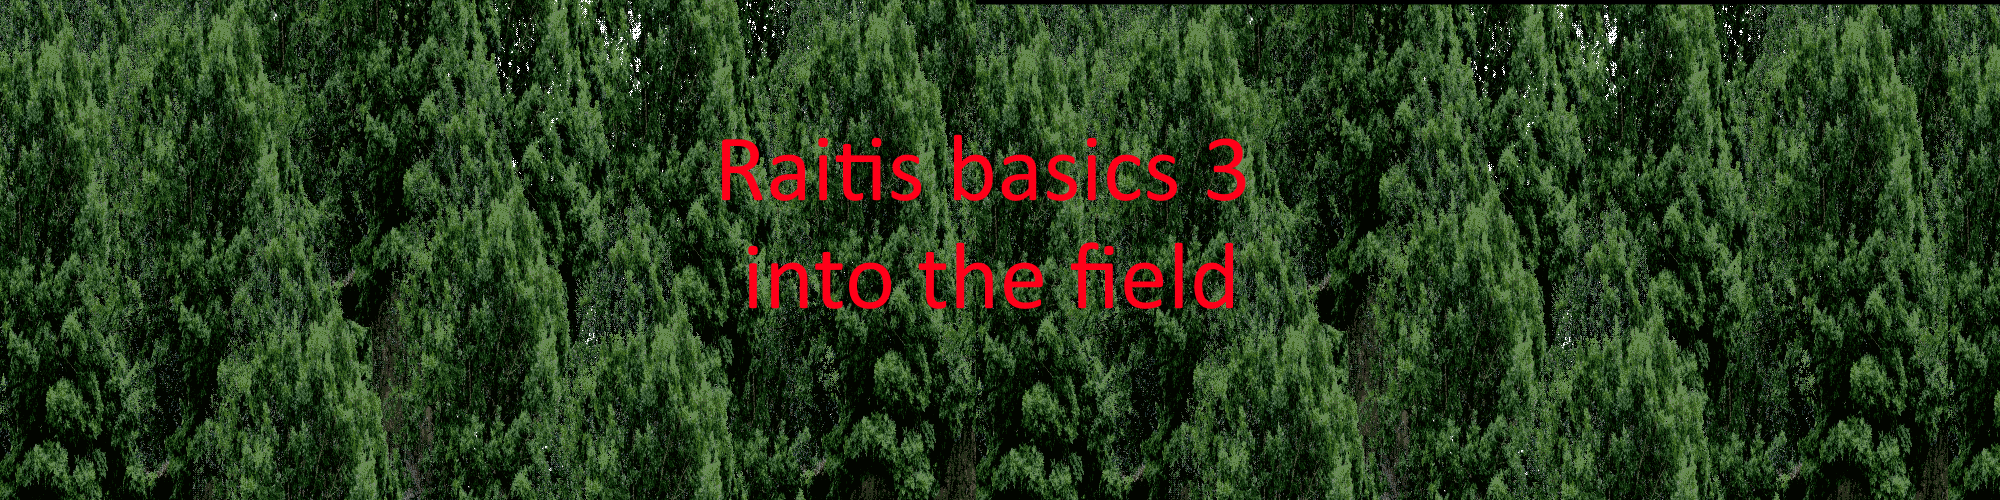 Raitis basics 3:into the feild trip